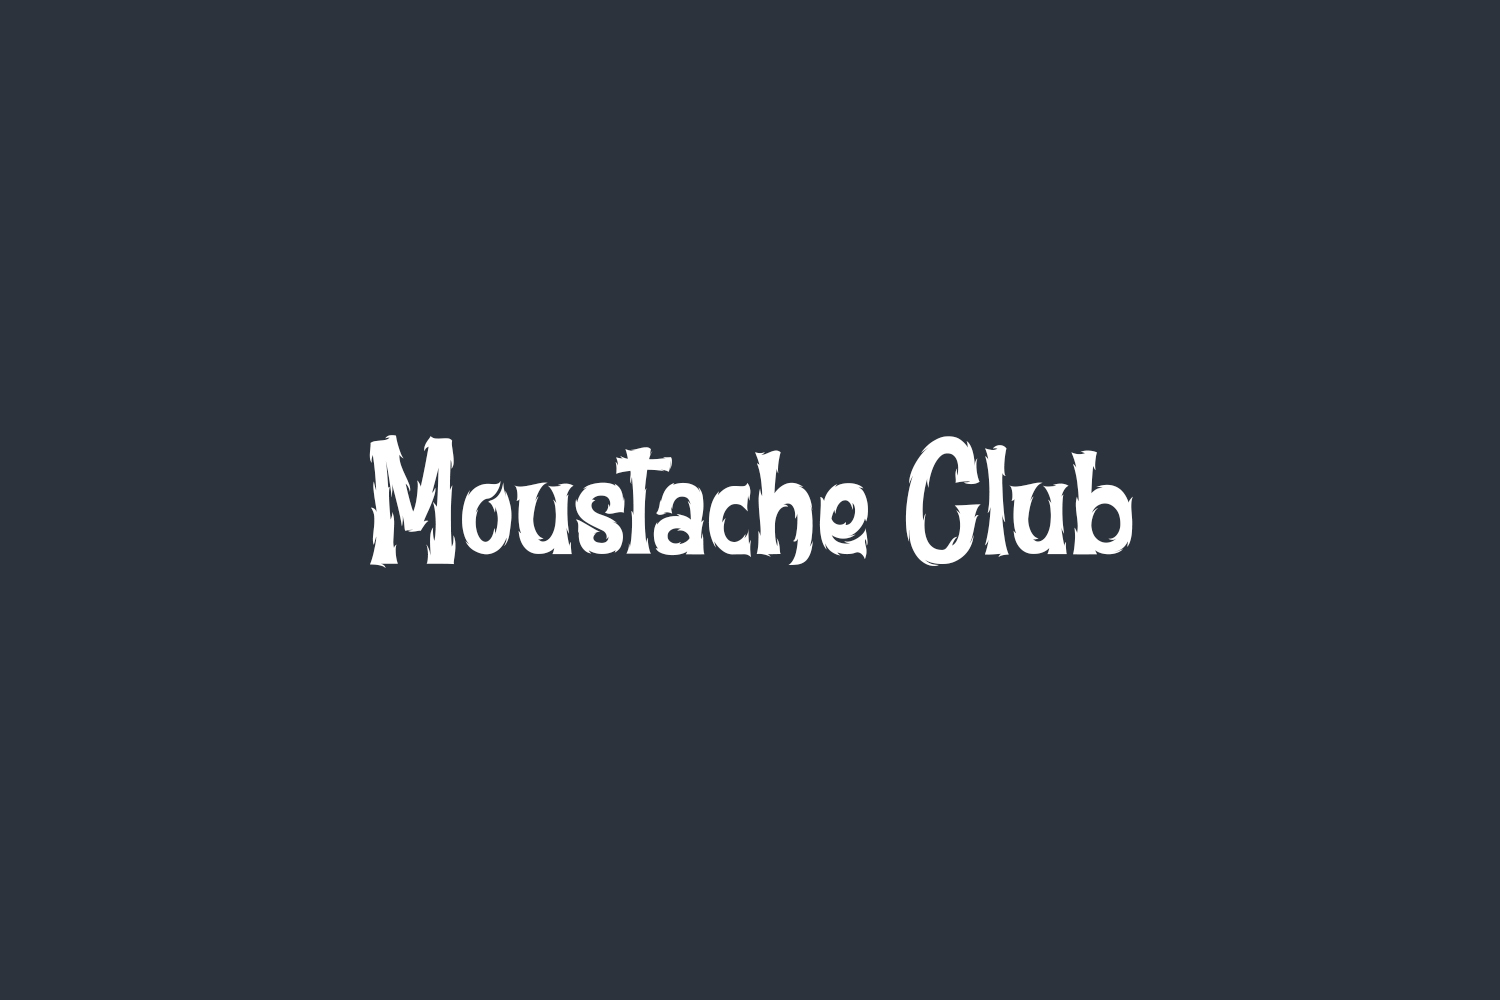 Moustache Club Free Font